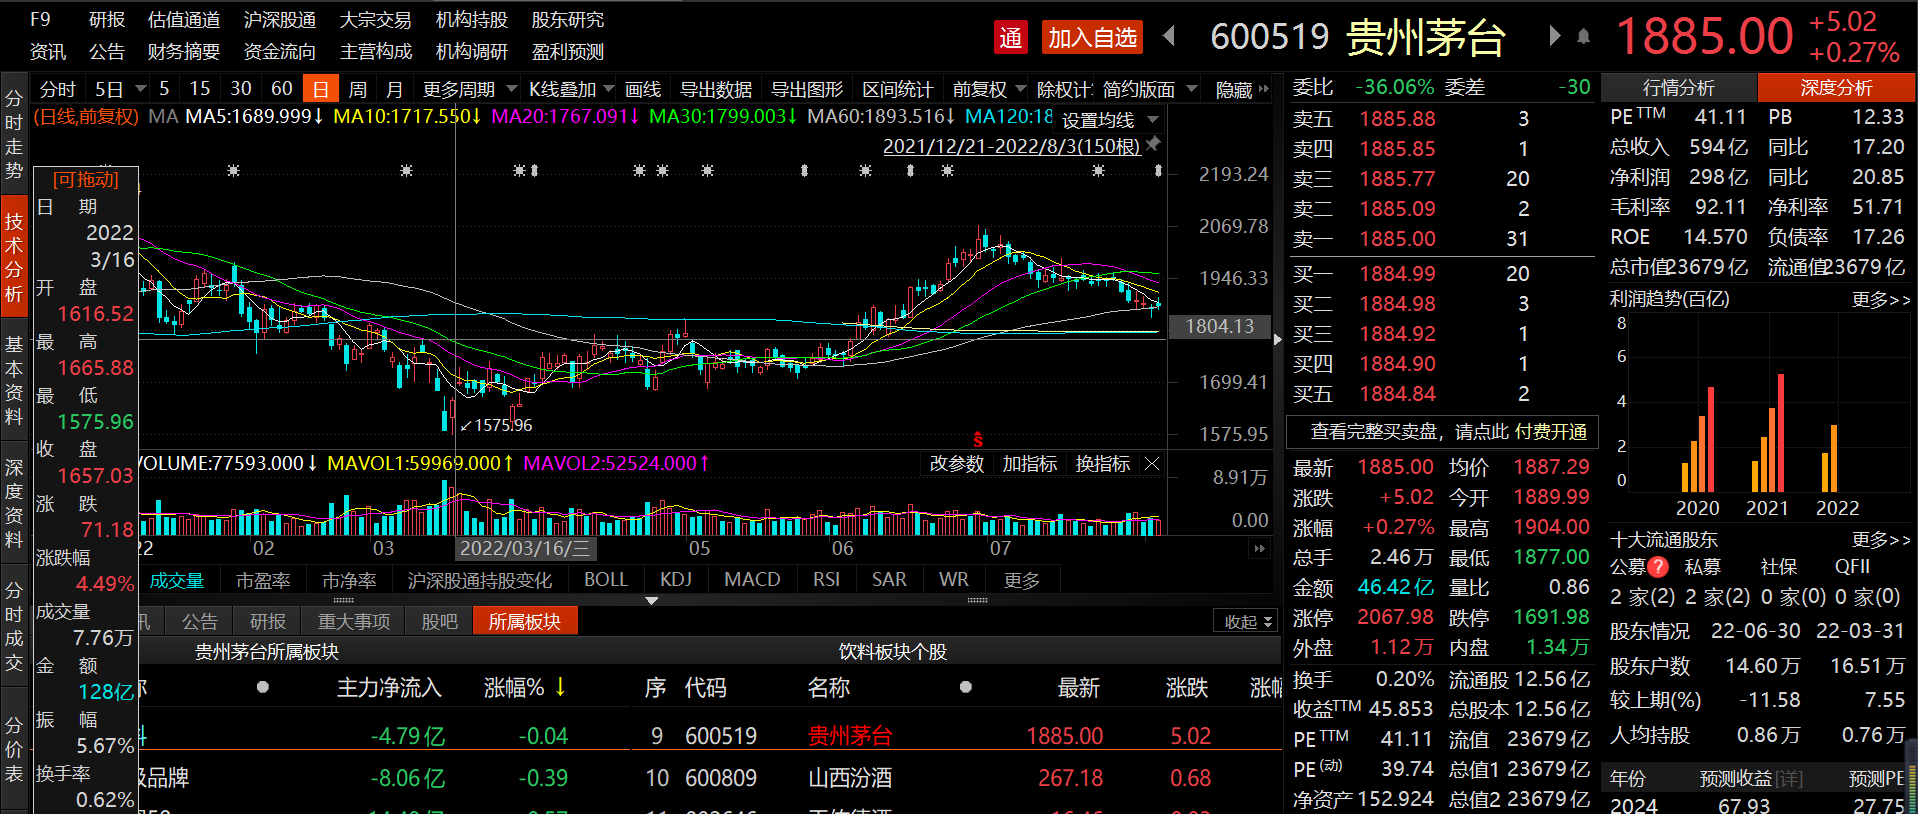 股价涨近30%！贵州茅台重回公募重仓股榜首，拉动葛兰业绩